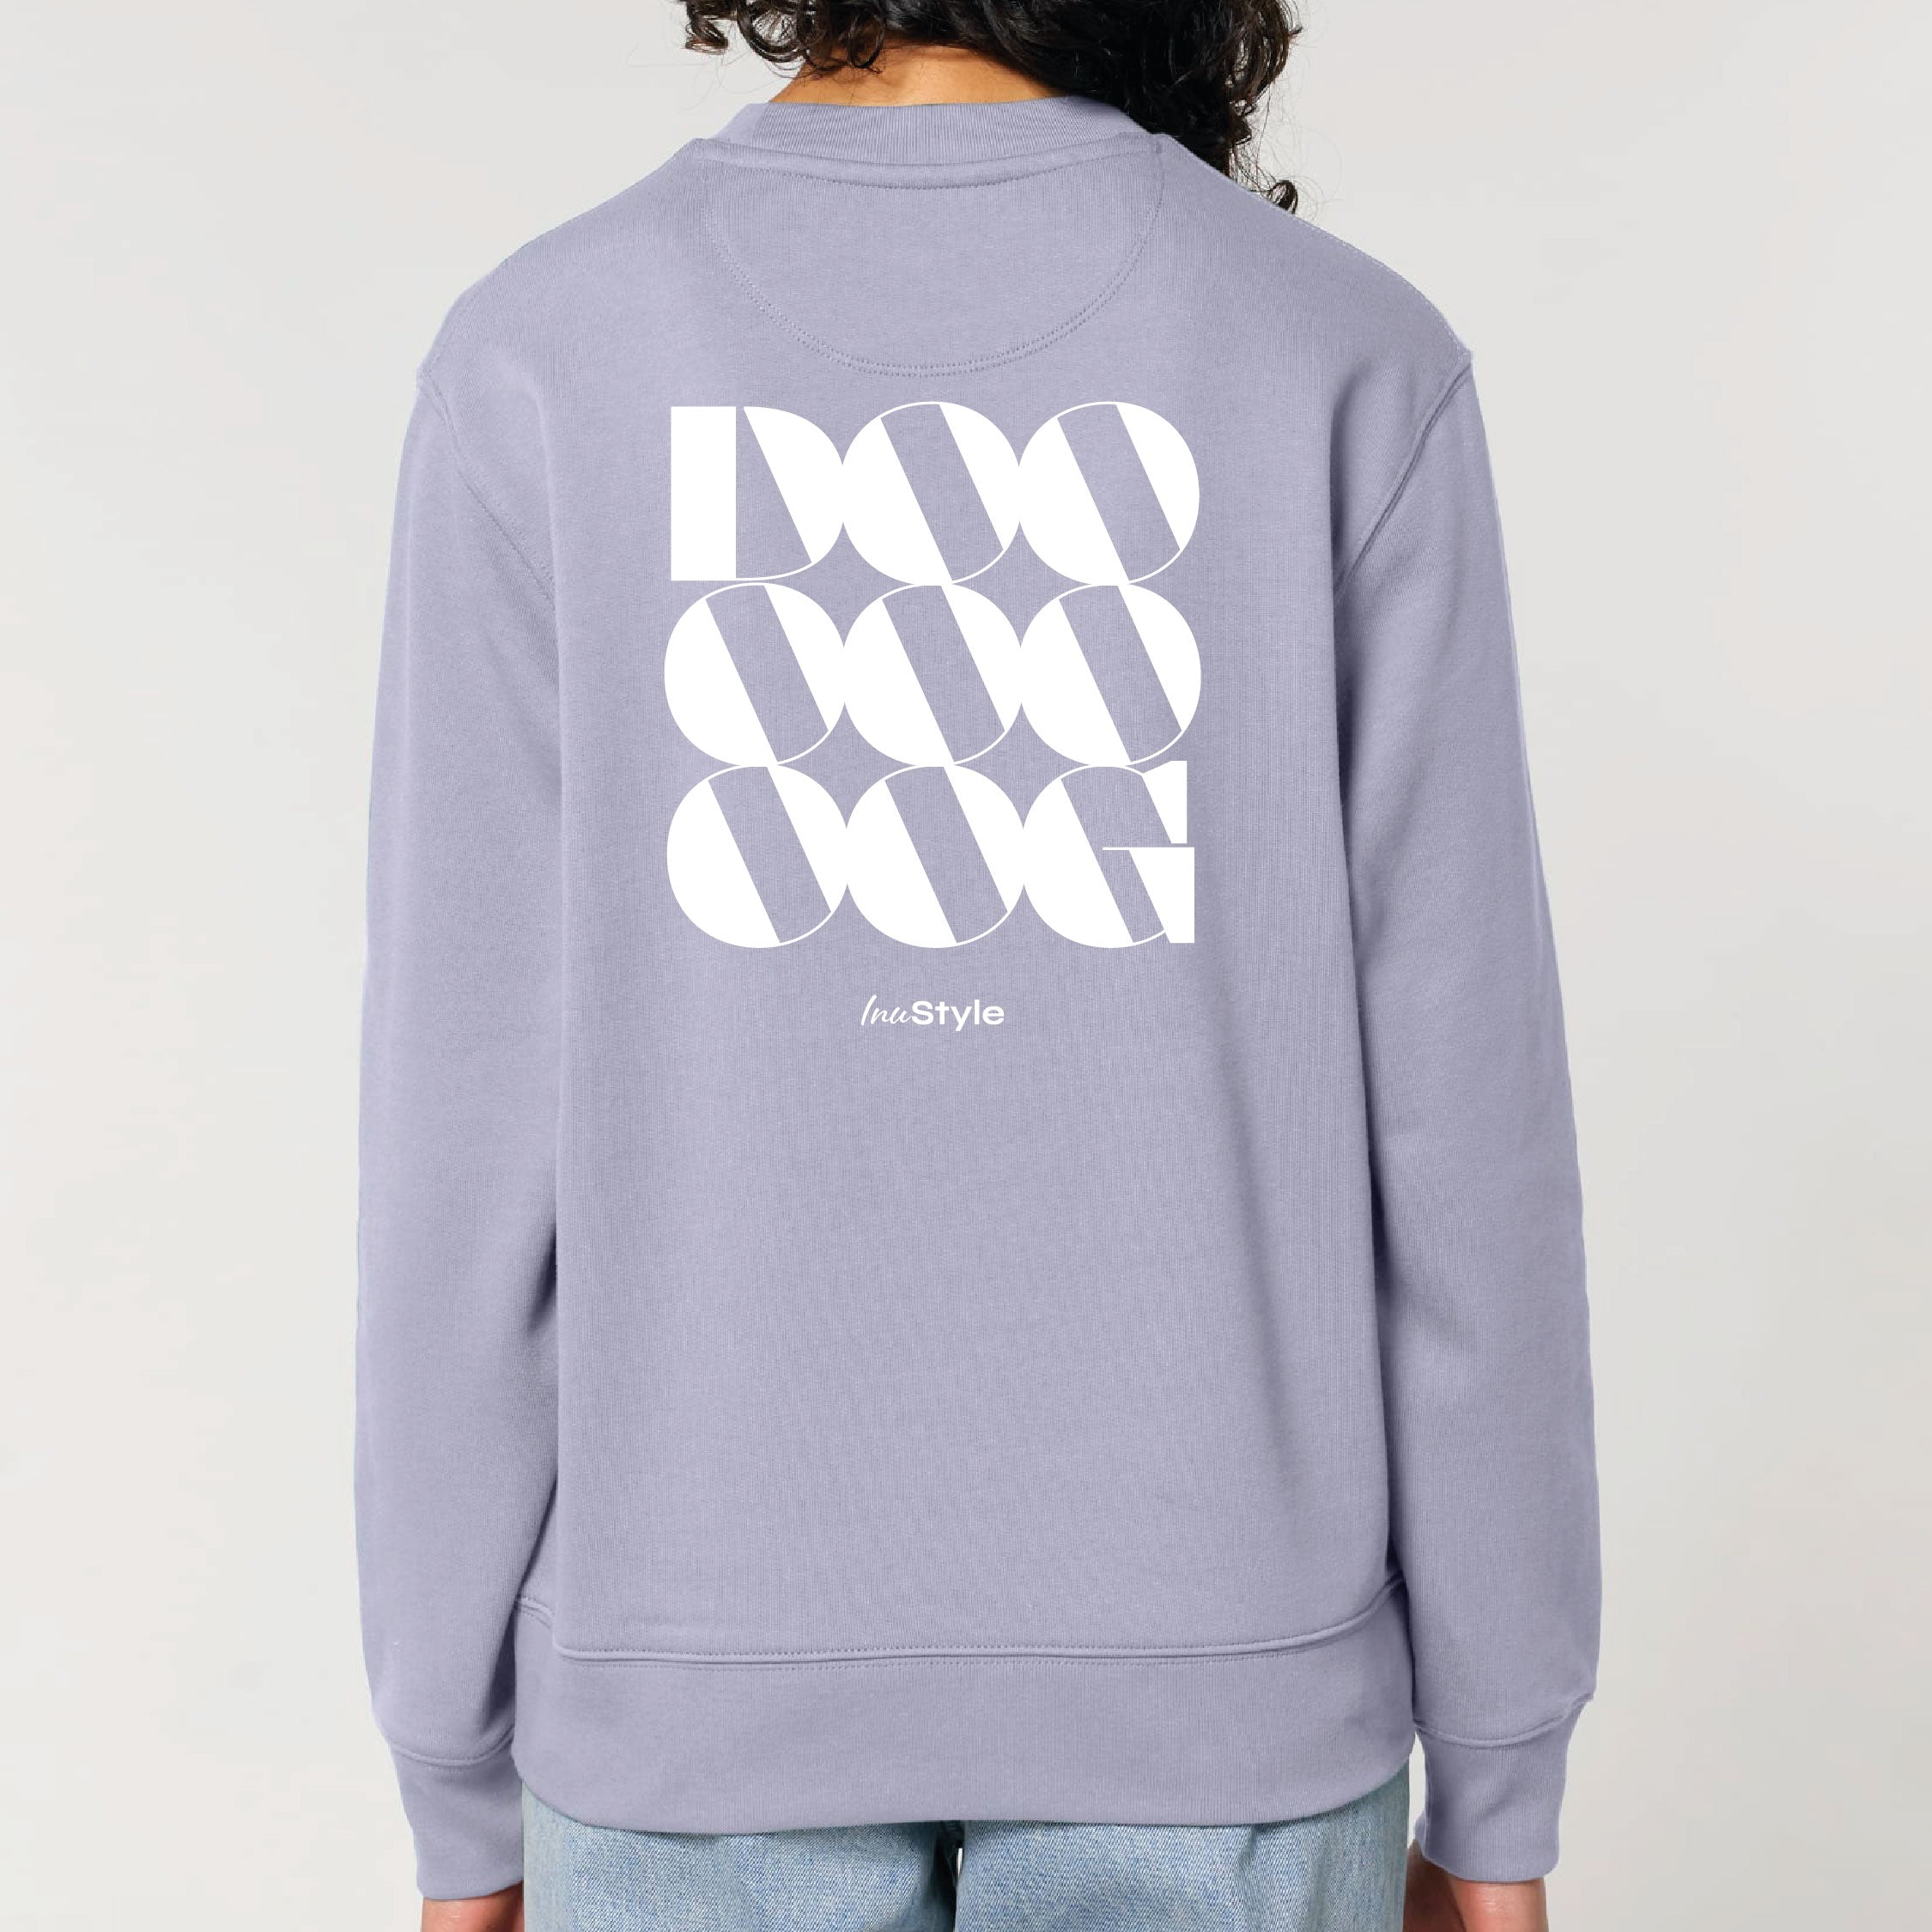 New Inu.style Collection - DOOG - Sweatshirt